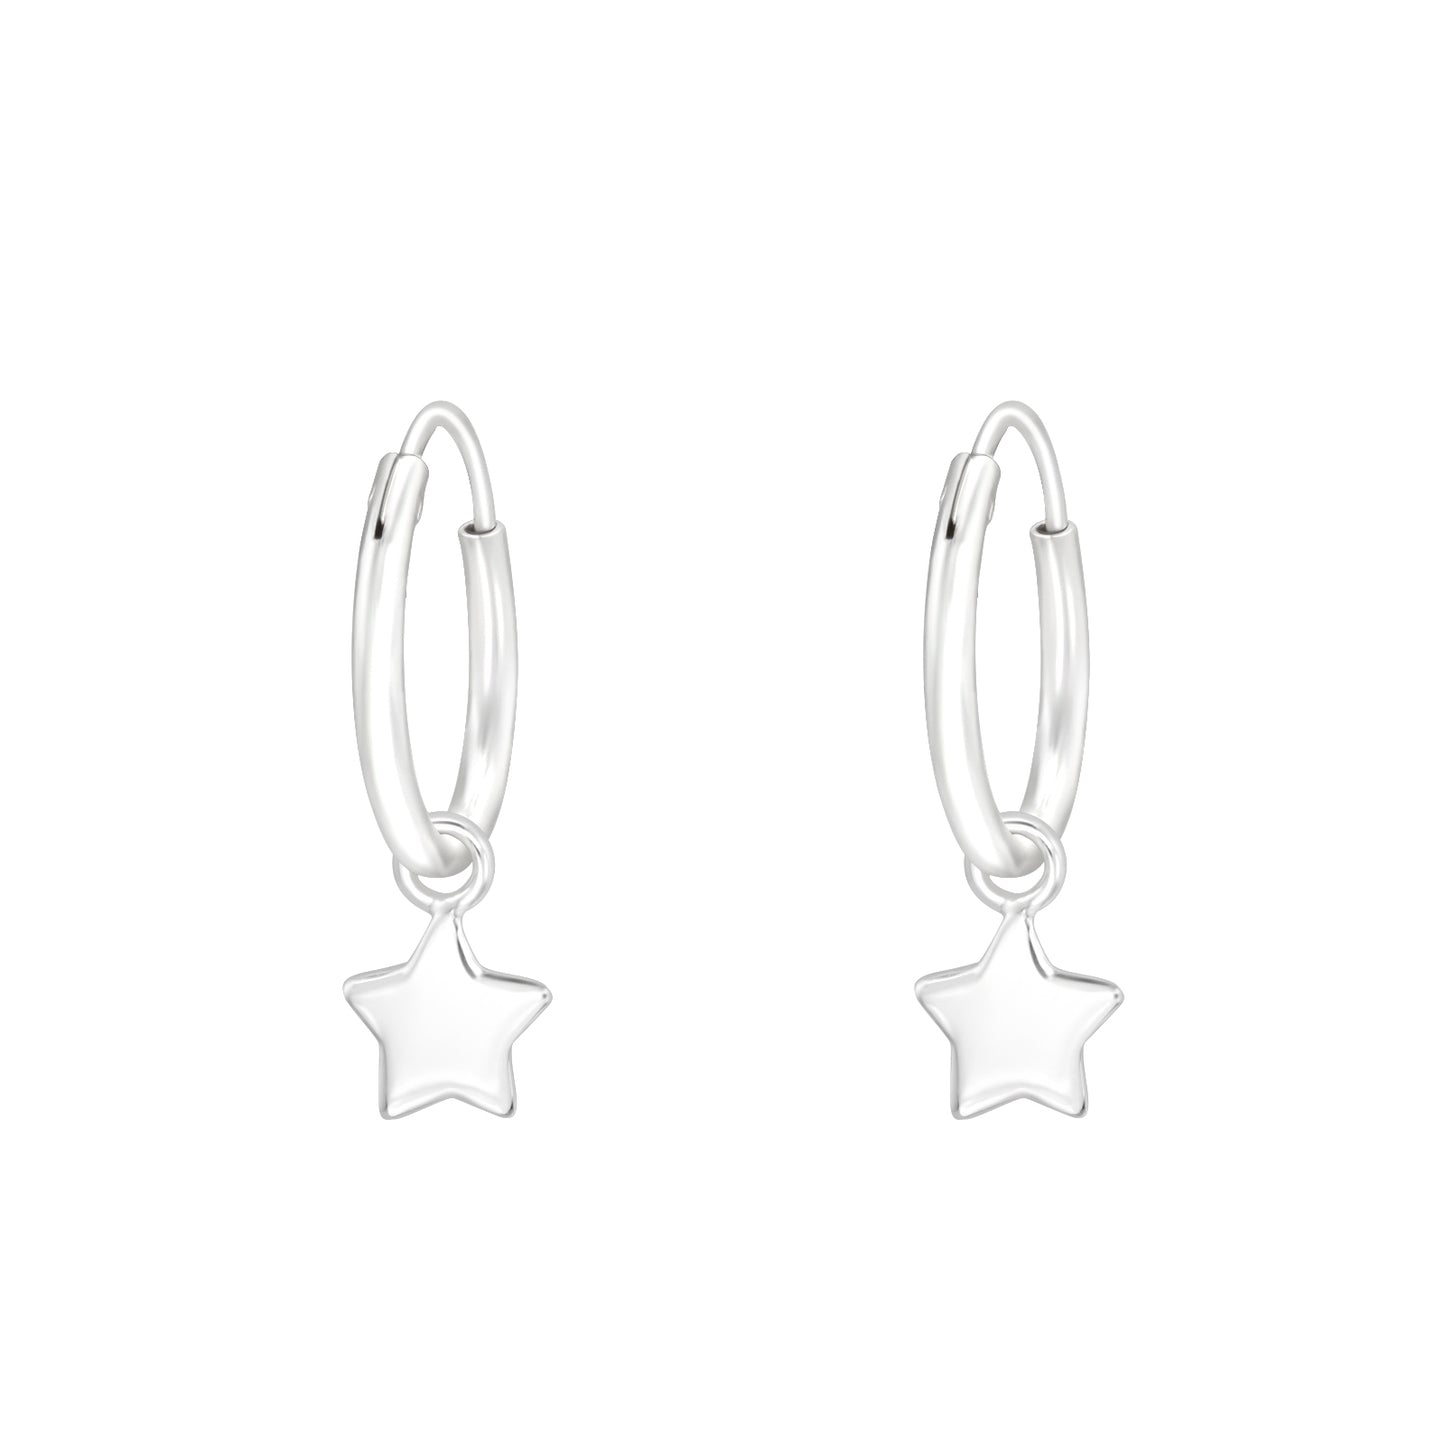 Dangling Star 12mm Hoop Earrings - Pair - 925 Sterling Silver